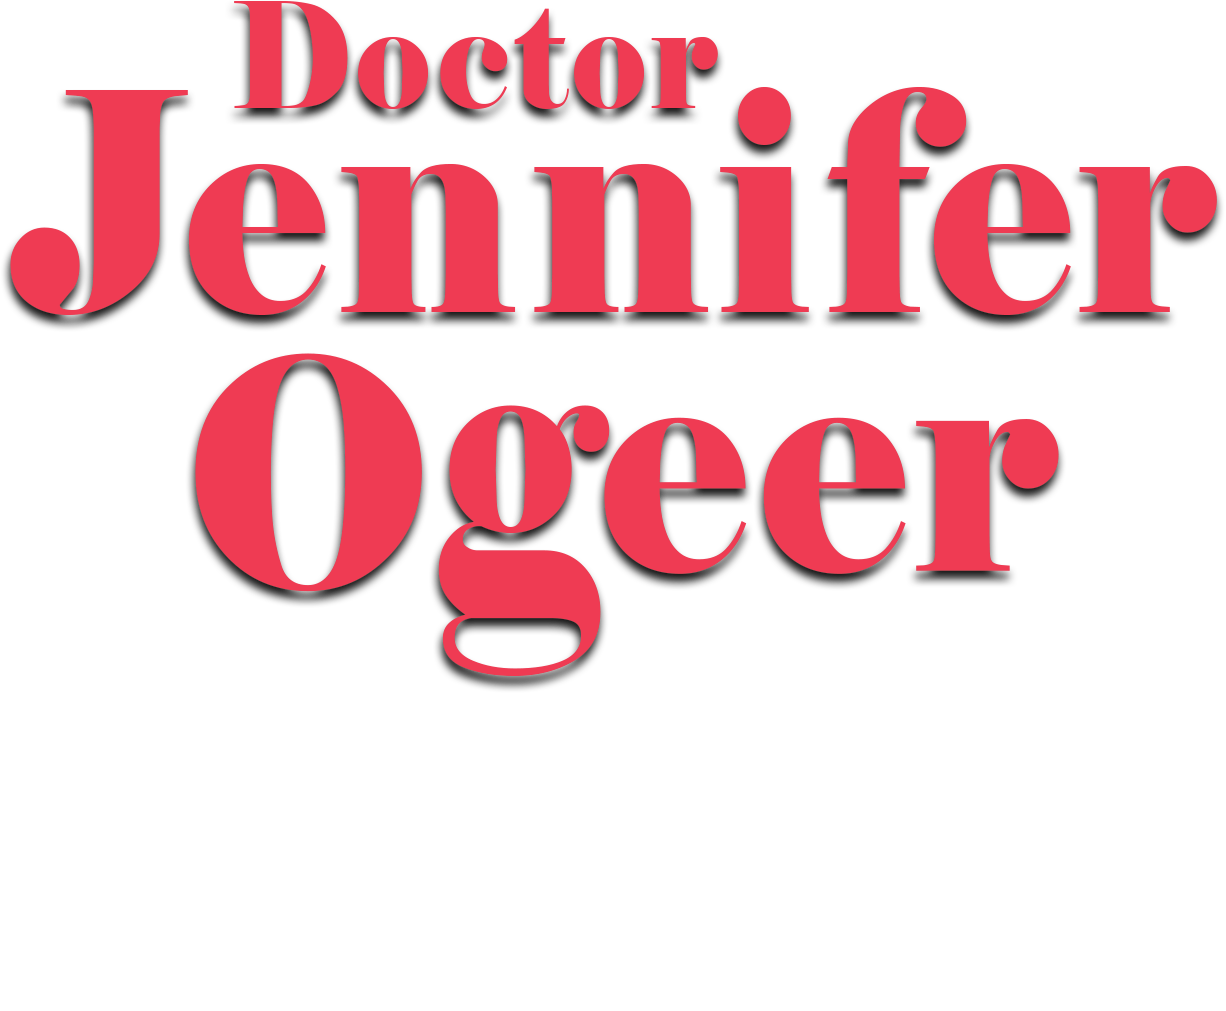 Doctor Jennifer Ogeer